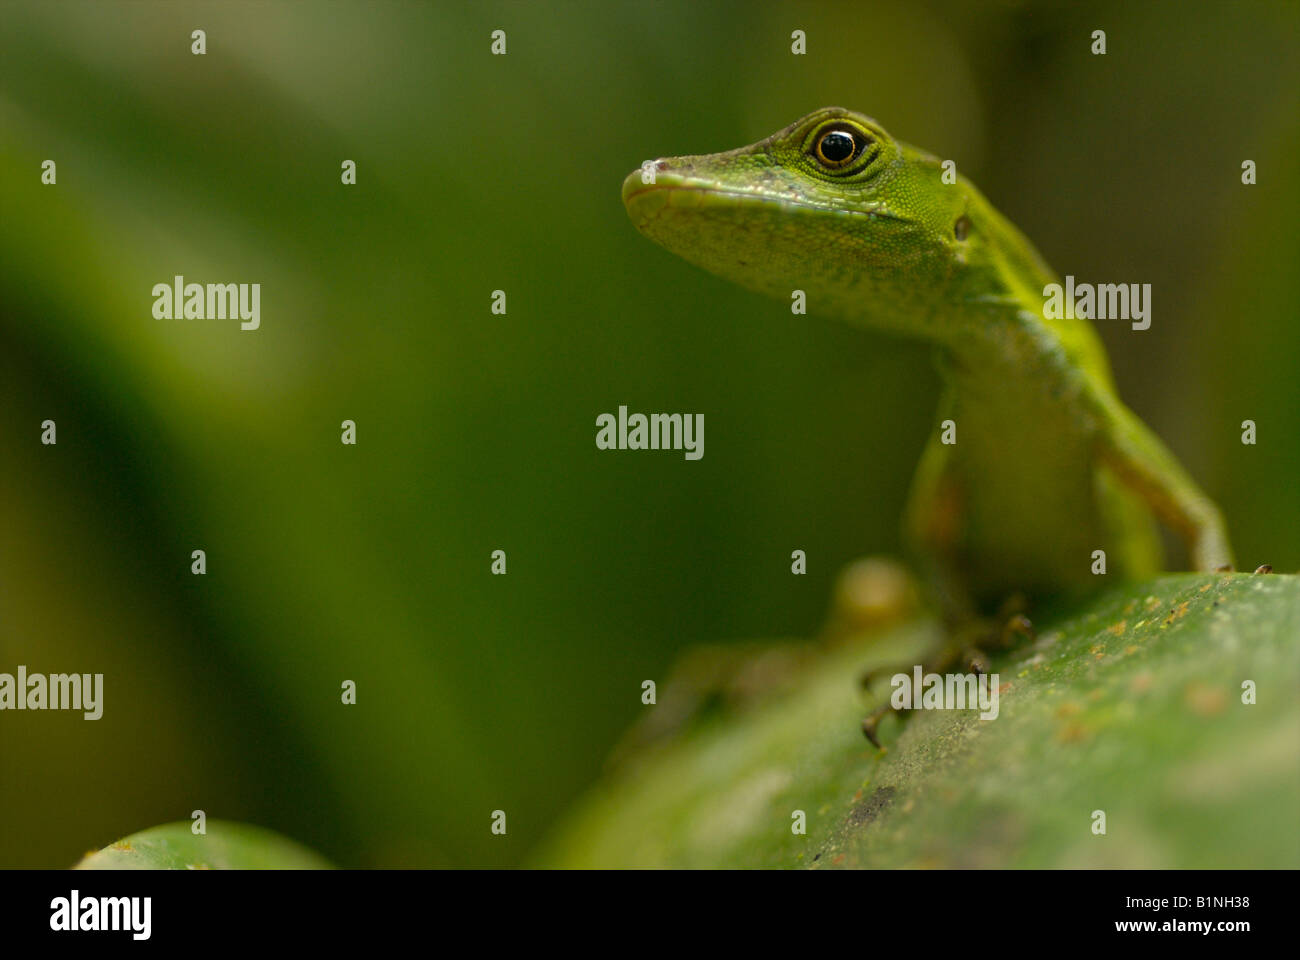 Anolis lizard portrait shot at eye level in Ecuadorian jungle. Stock Photo